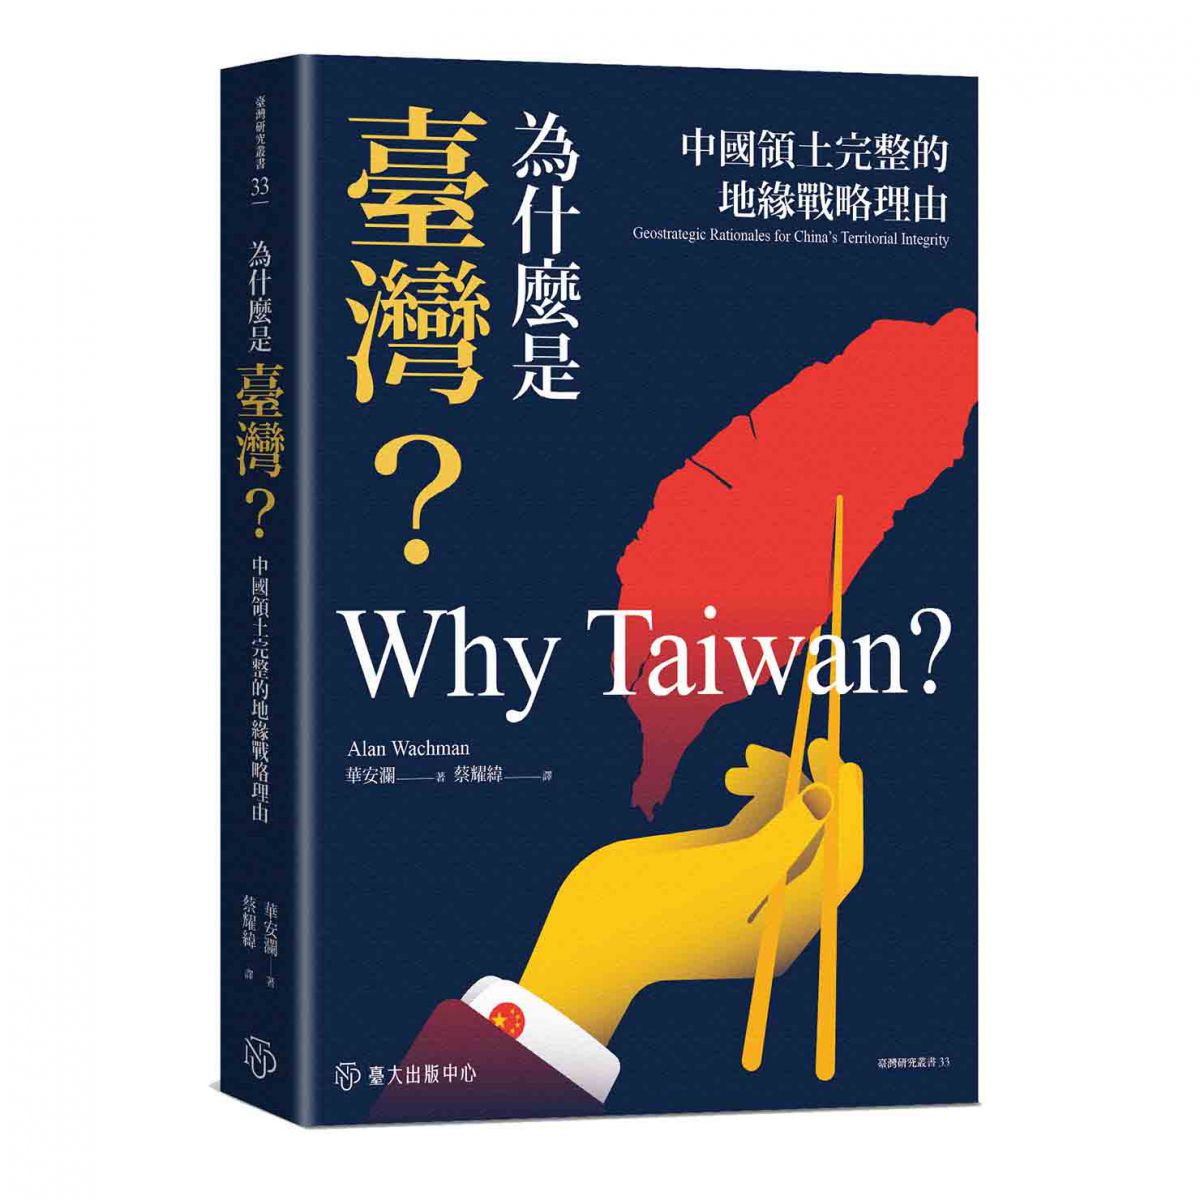 《為什麼是臺灣？》運用多種史料與各方論著，以追溯中國對臺灣考量的演變過程